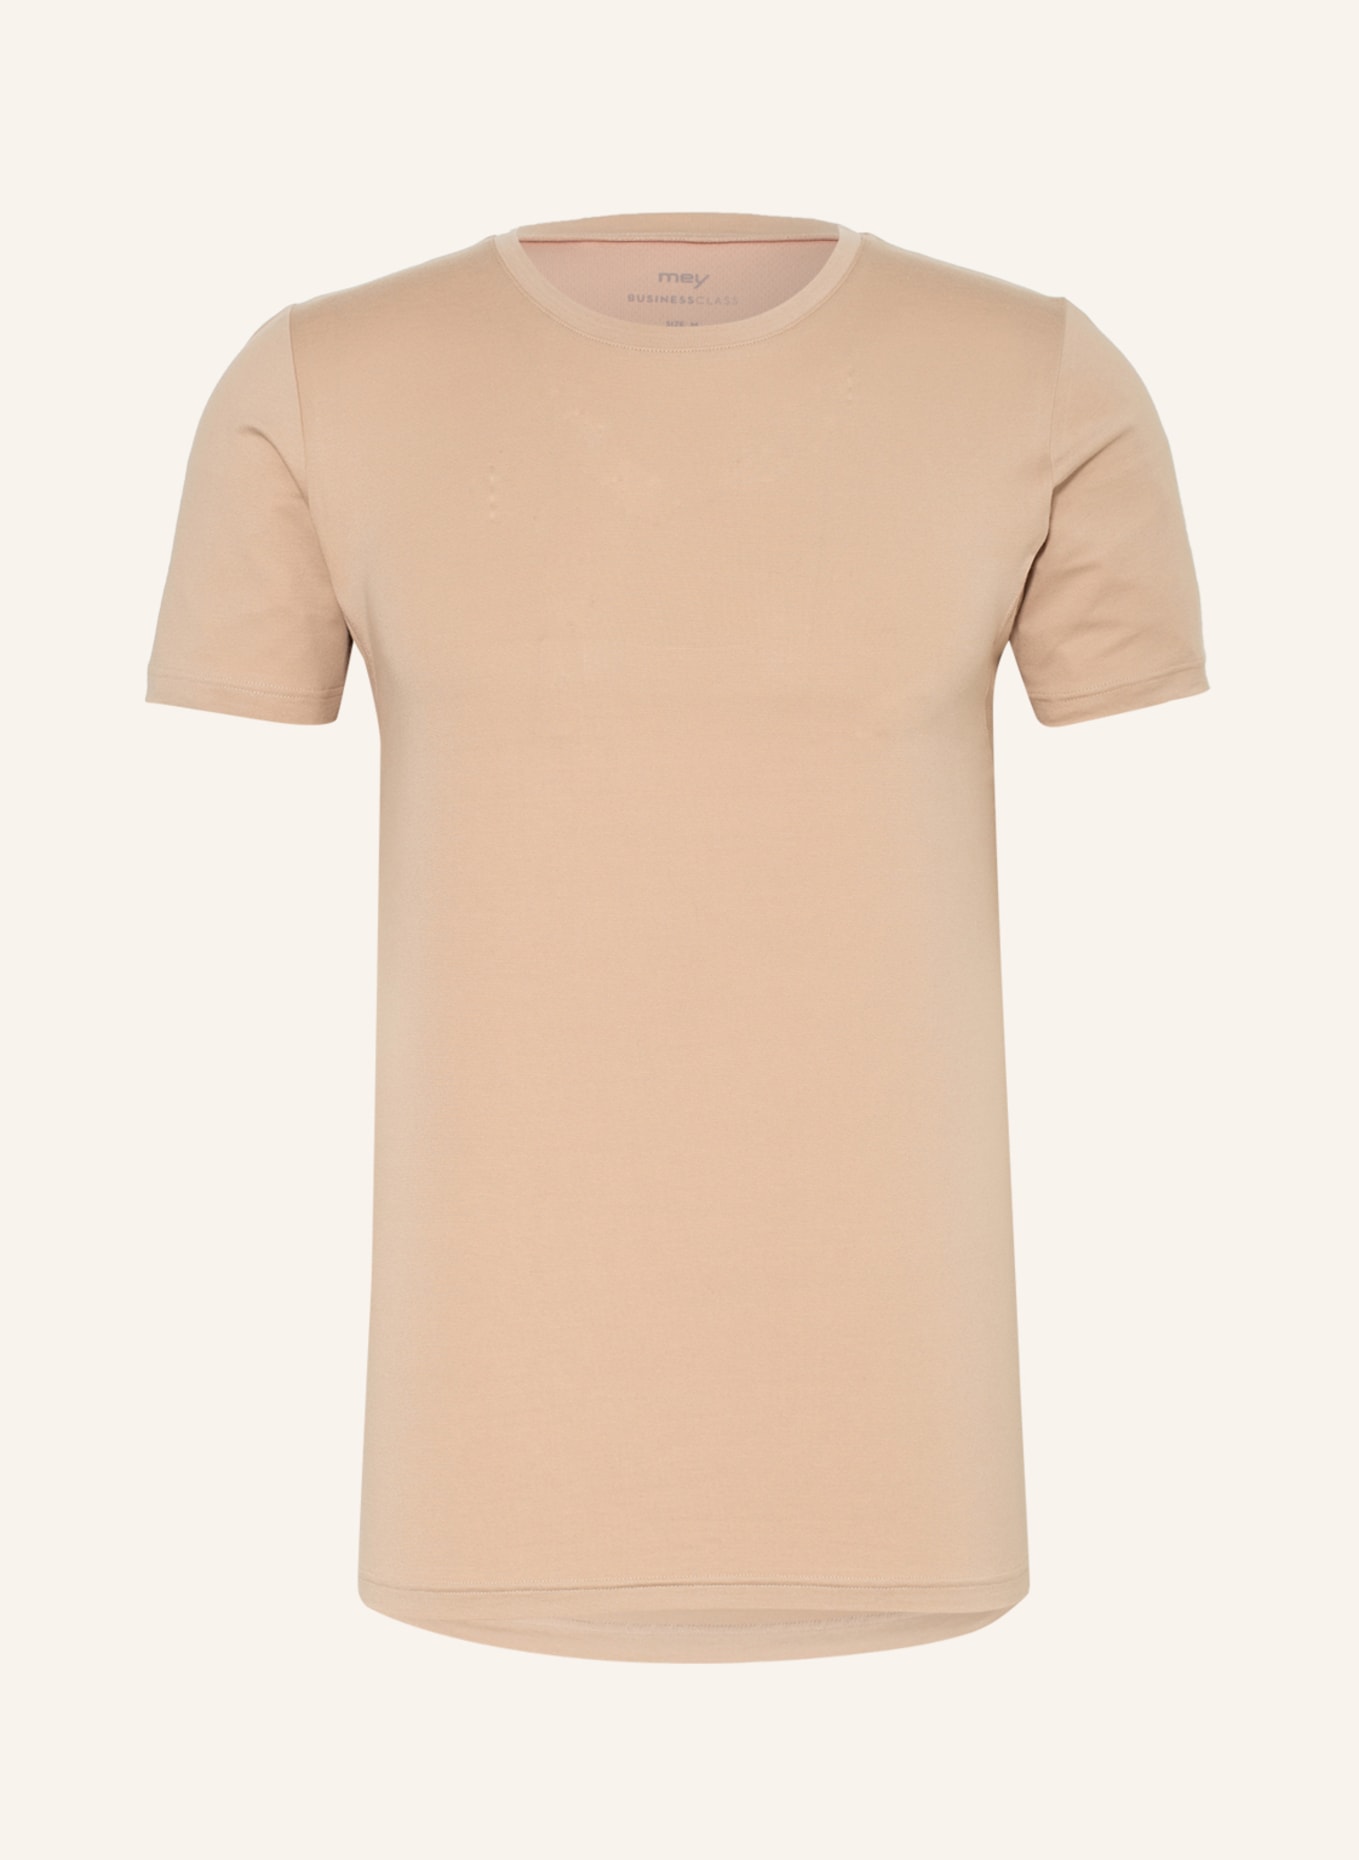 mey T-Shirt Serie BUSINESS CLASS, Farbe: BEIGE (Bild 1)